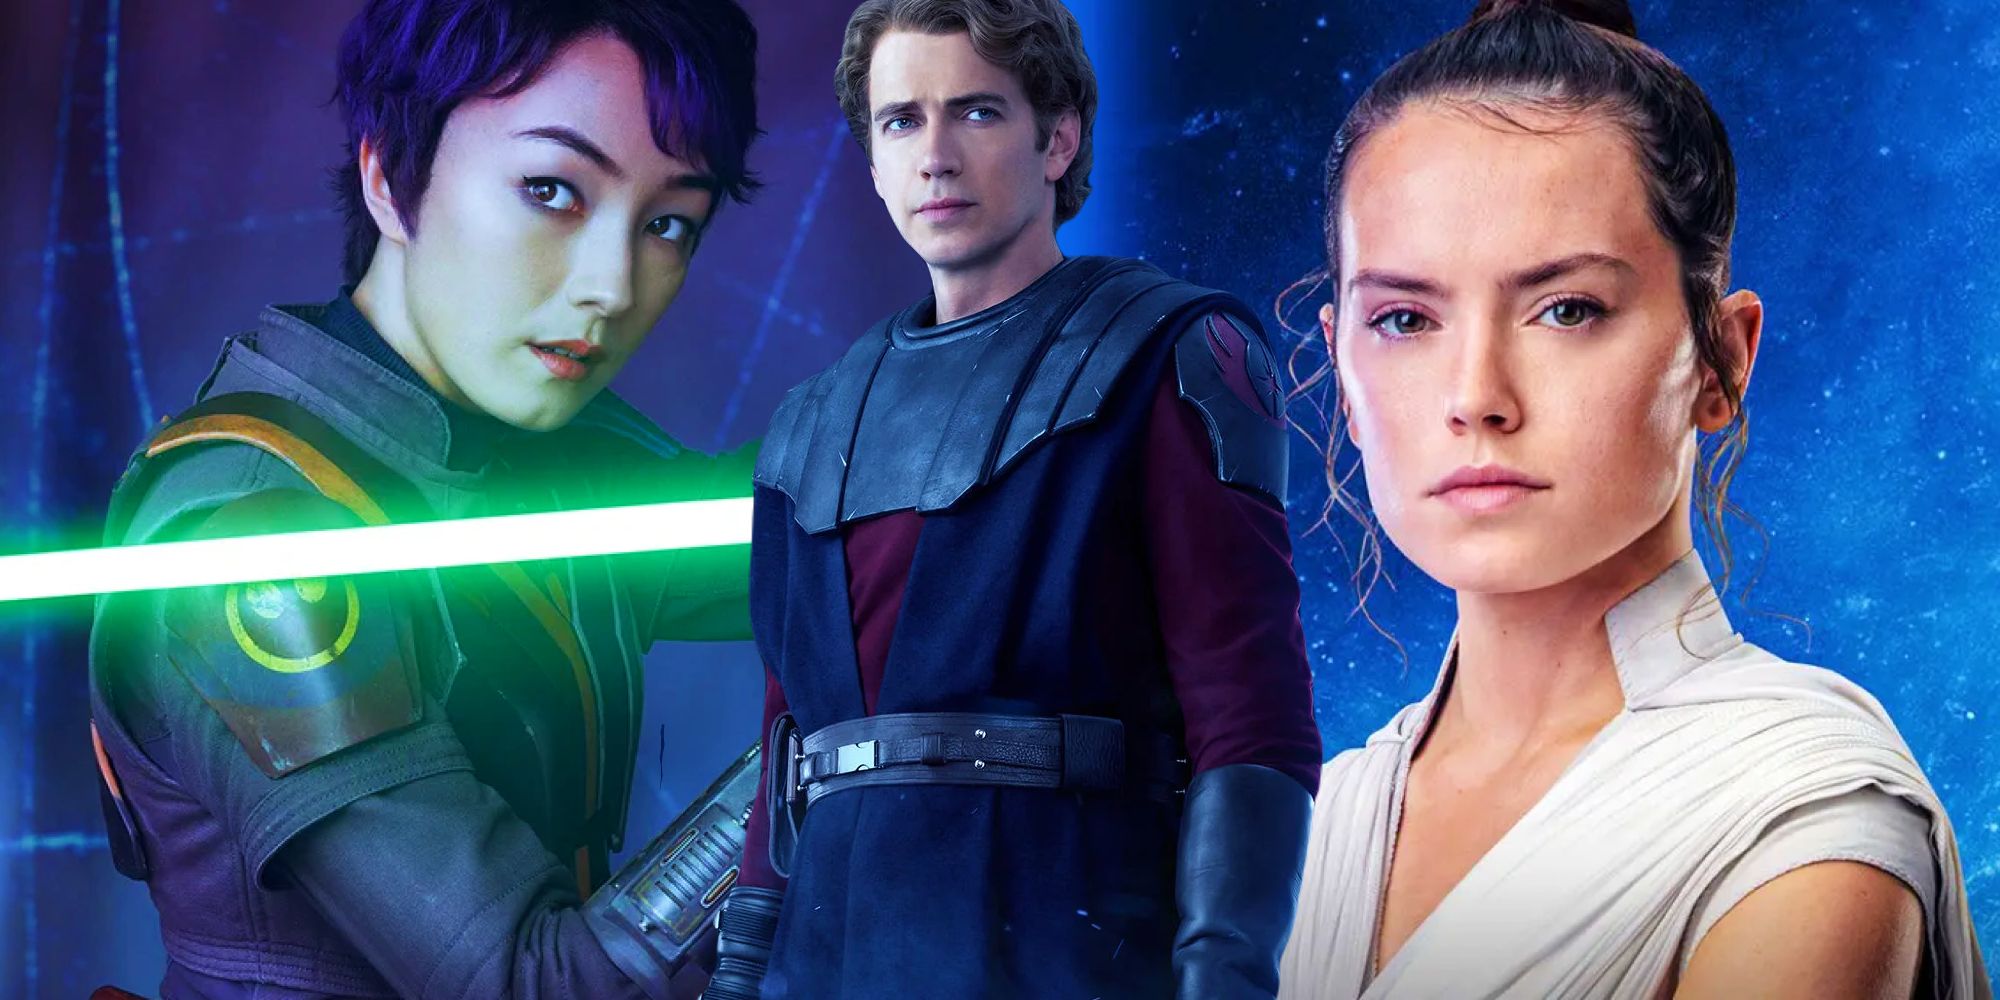 “Todos pueden convertirse en Jedi”: Ahsoka Showrunner explica cómo la trama Jedi de Sabine abre la Fuerza de par en par